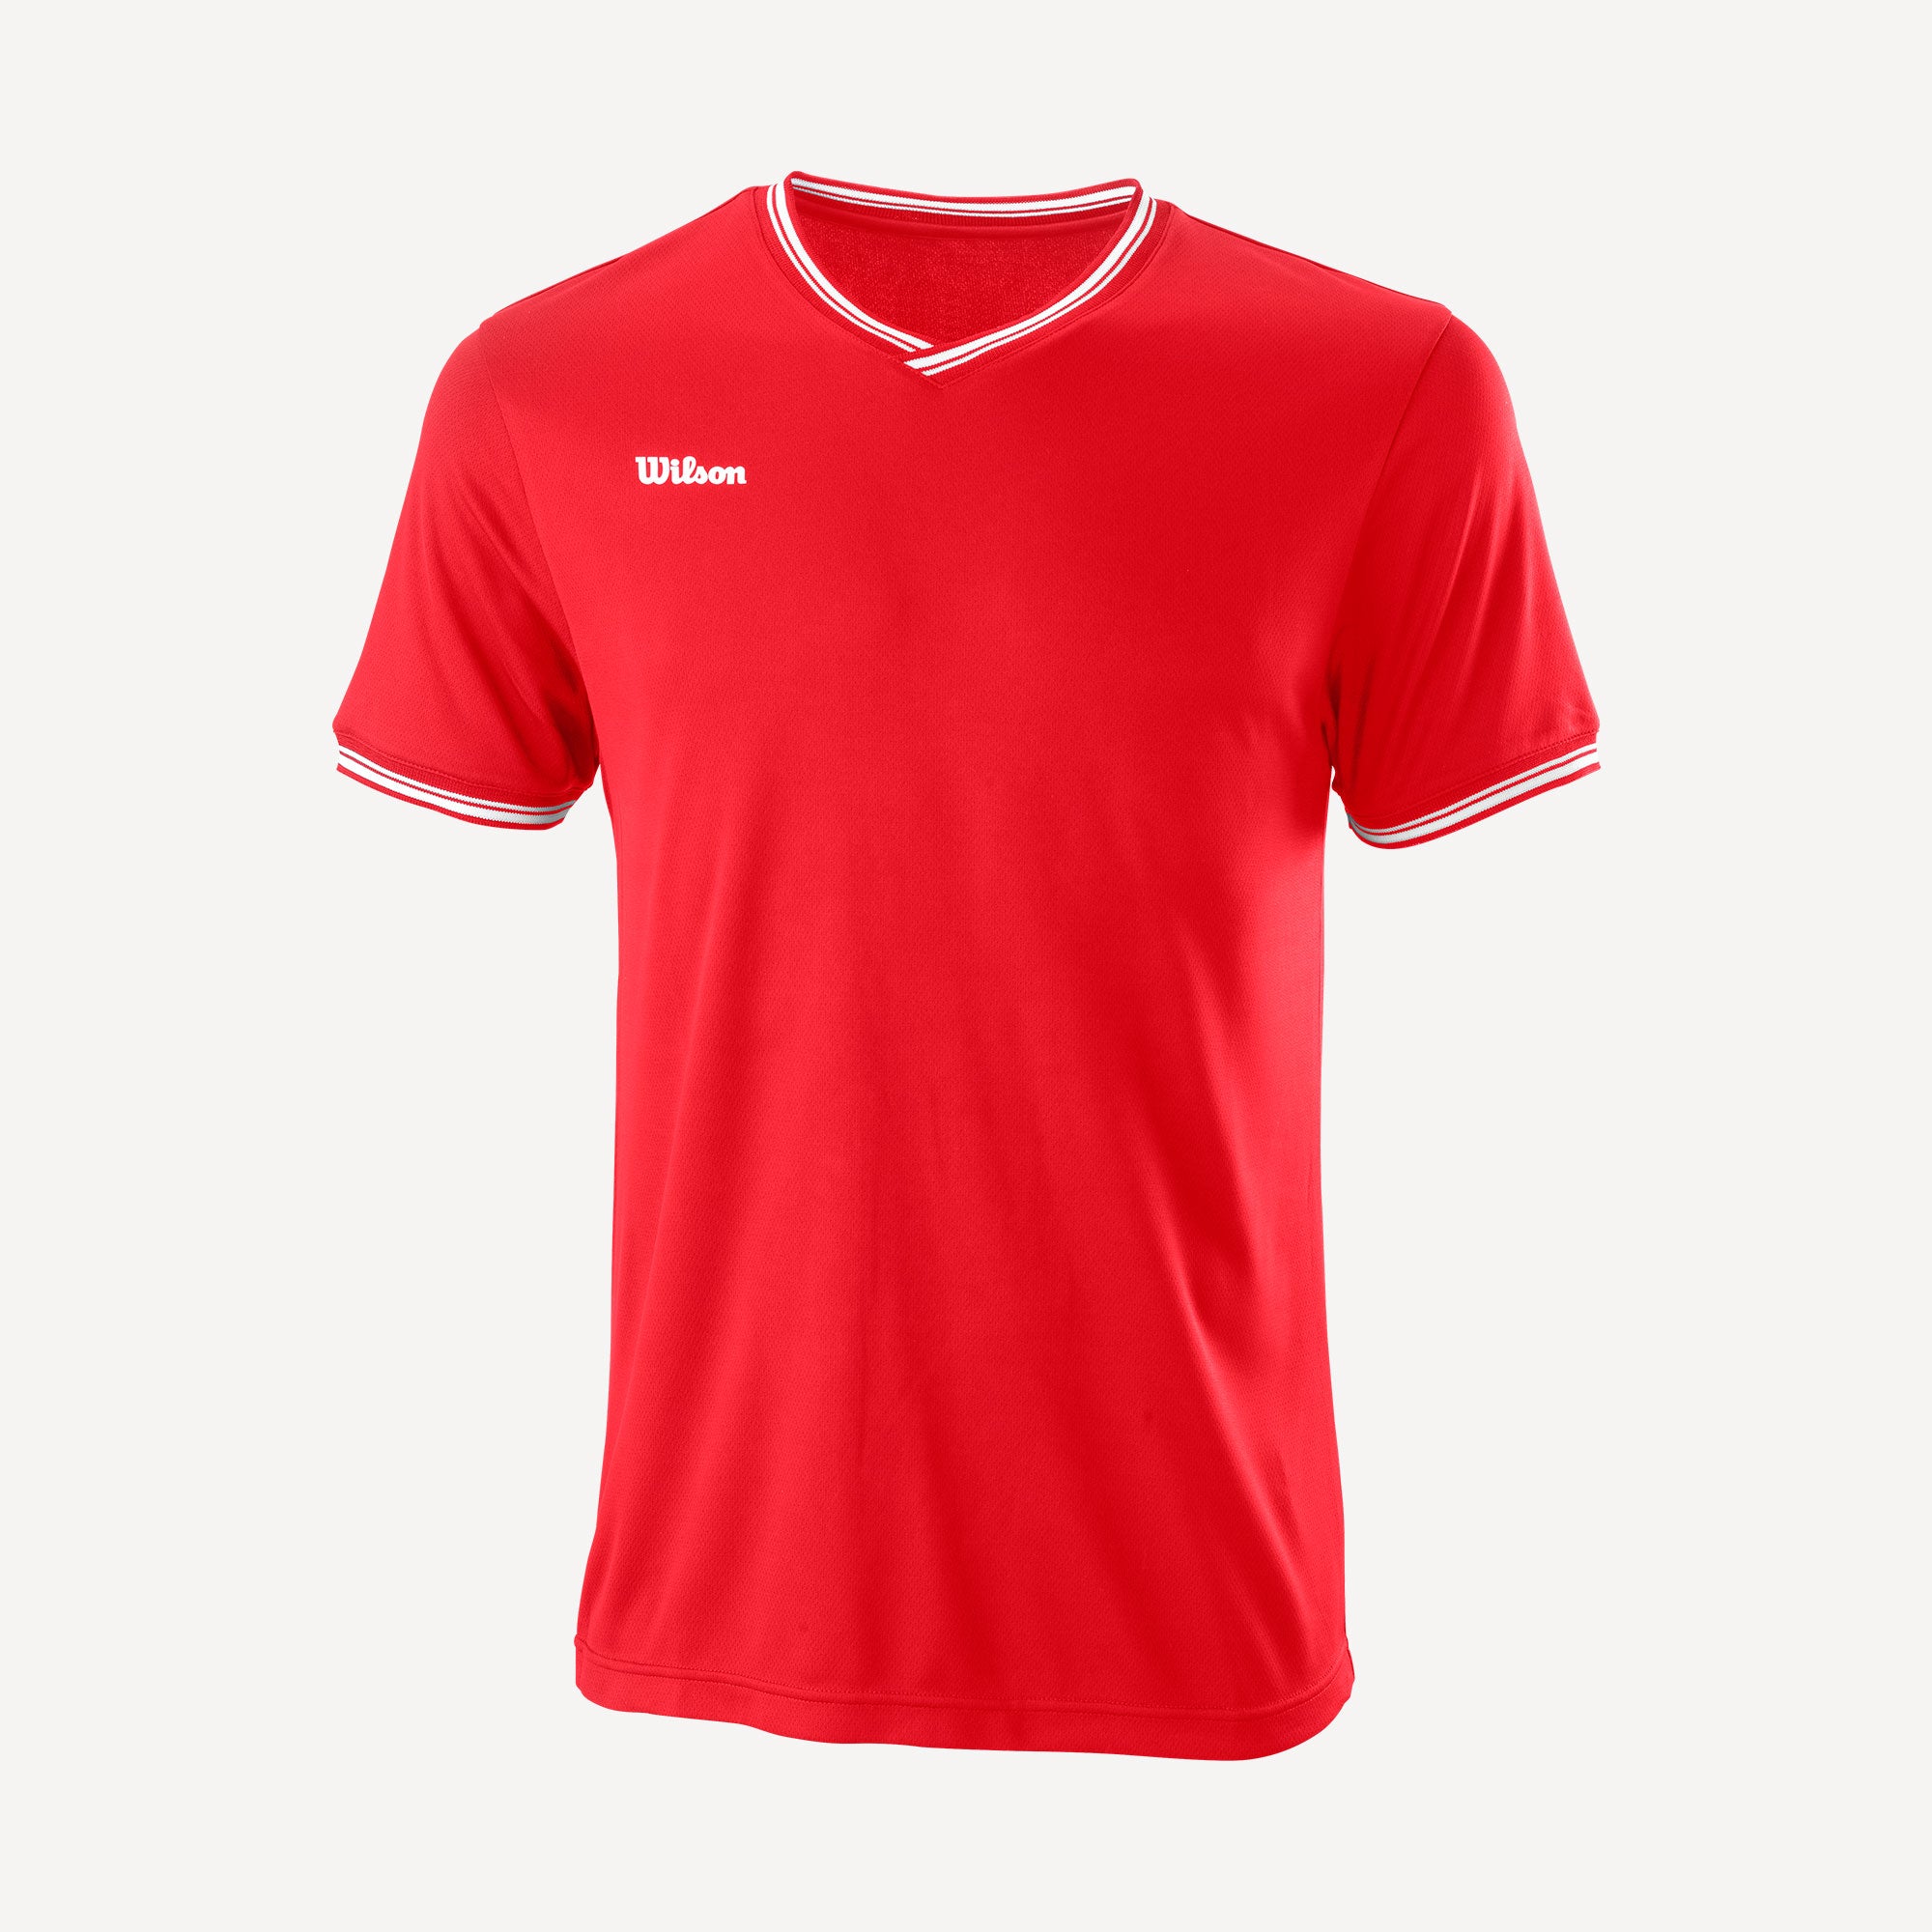 Wilson Team 2 Men's V-Neck Tennis Shirt Red (1)